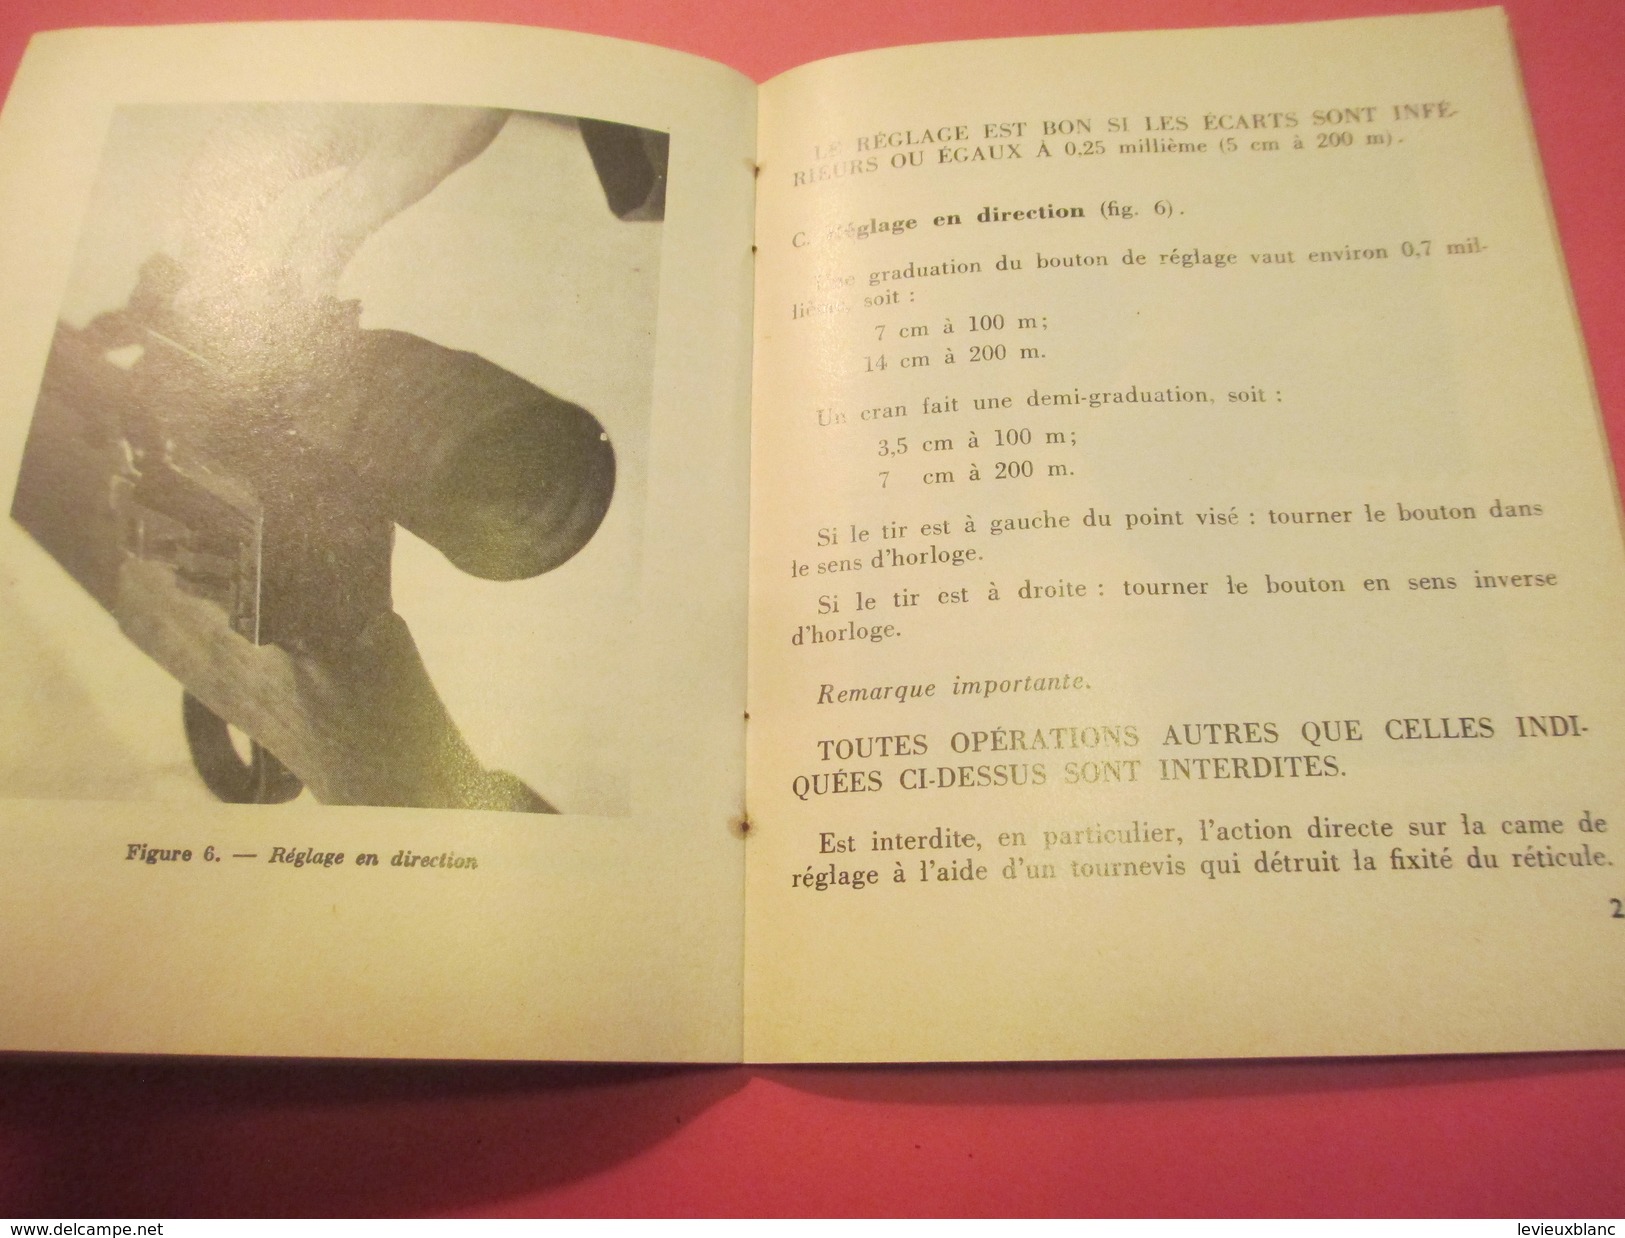 Fascicule/Guide techn/Lunette de Tir Modèle 1953 pour Fusil semi-automatique/Ministère d'Etat /MAT1853/1972   VPN119